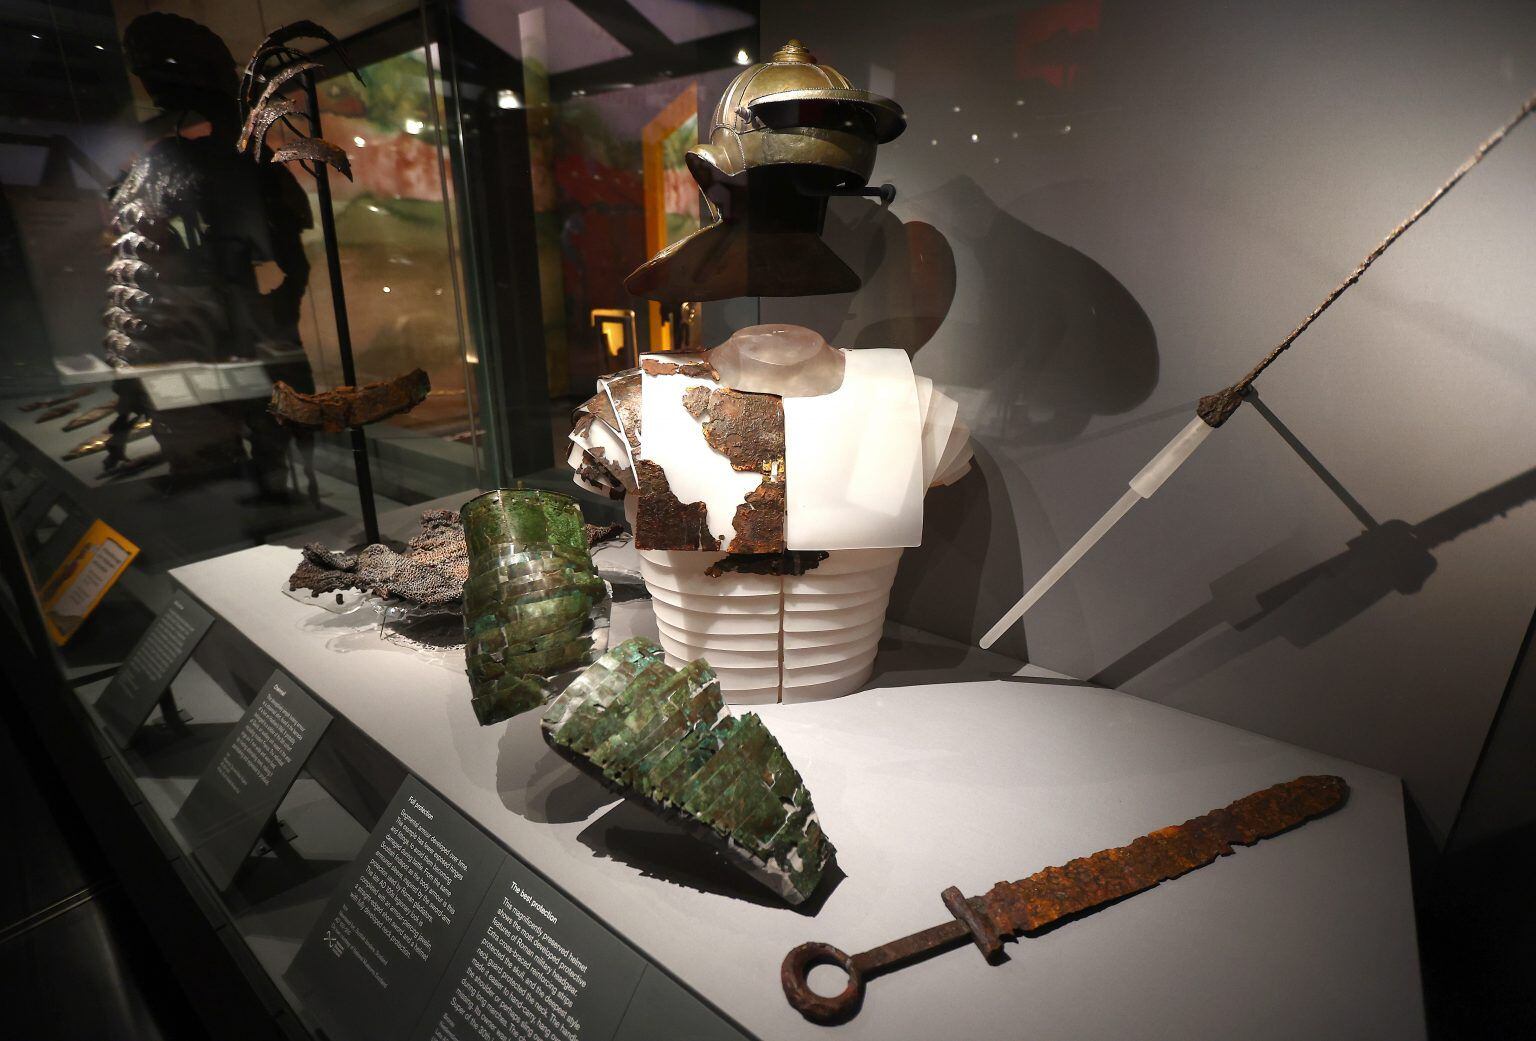 Equipamiento militar romano en la exposición sobre las legiones en el British Museum.